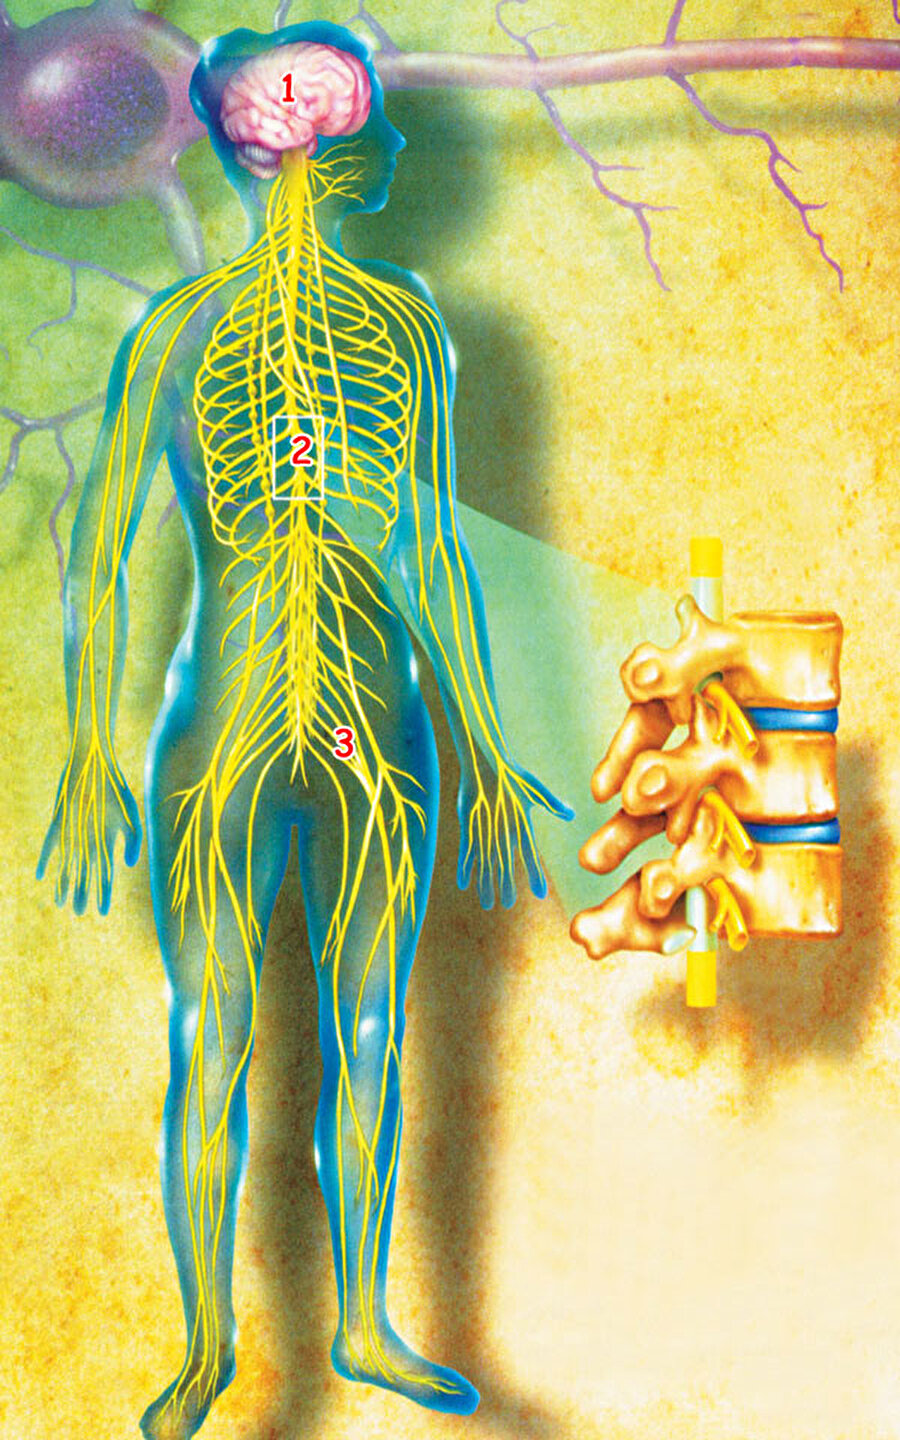 İnsan vücudundaki tüm sinirlerin toplam uzunluğu 75 kilometredir.
